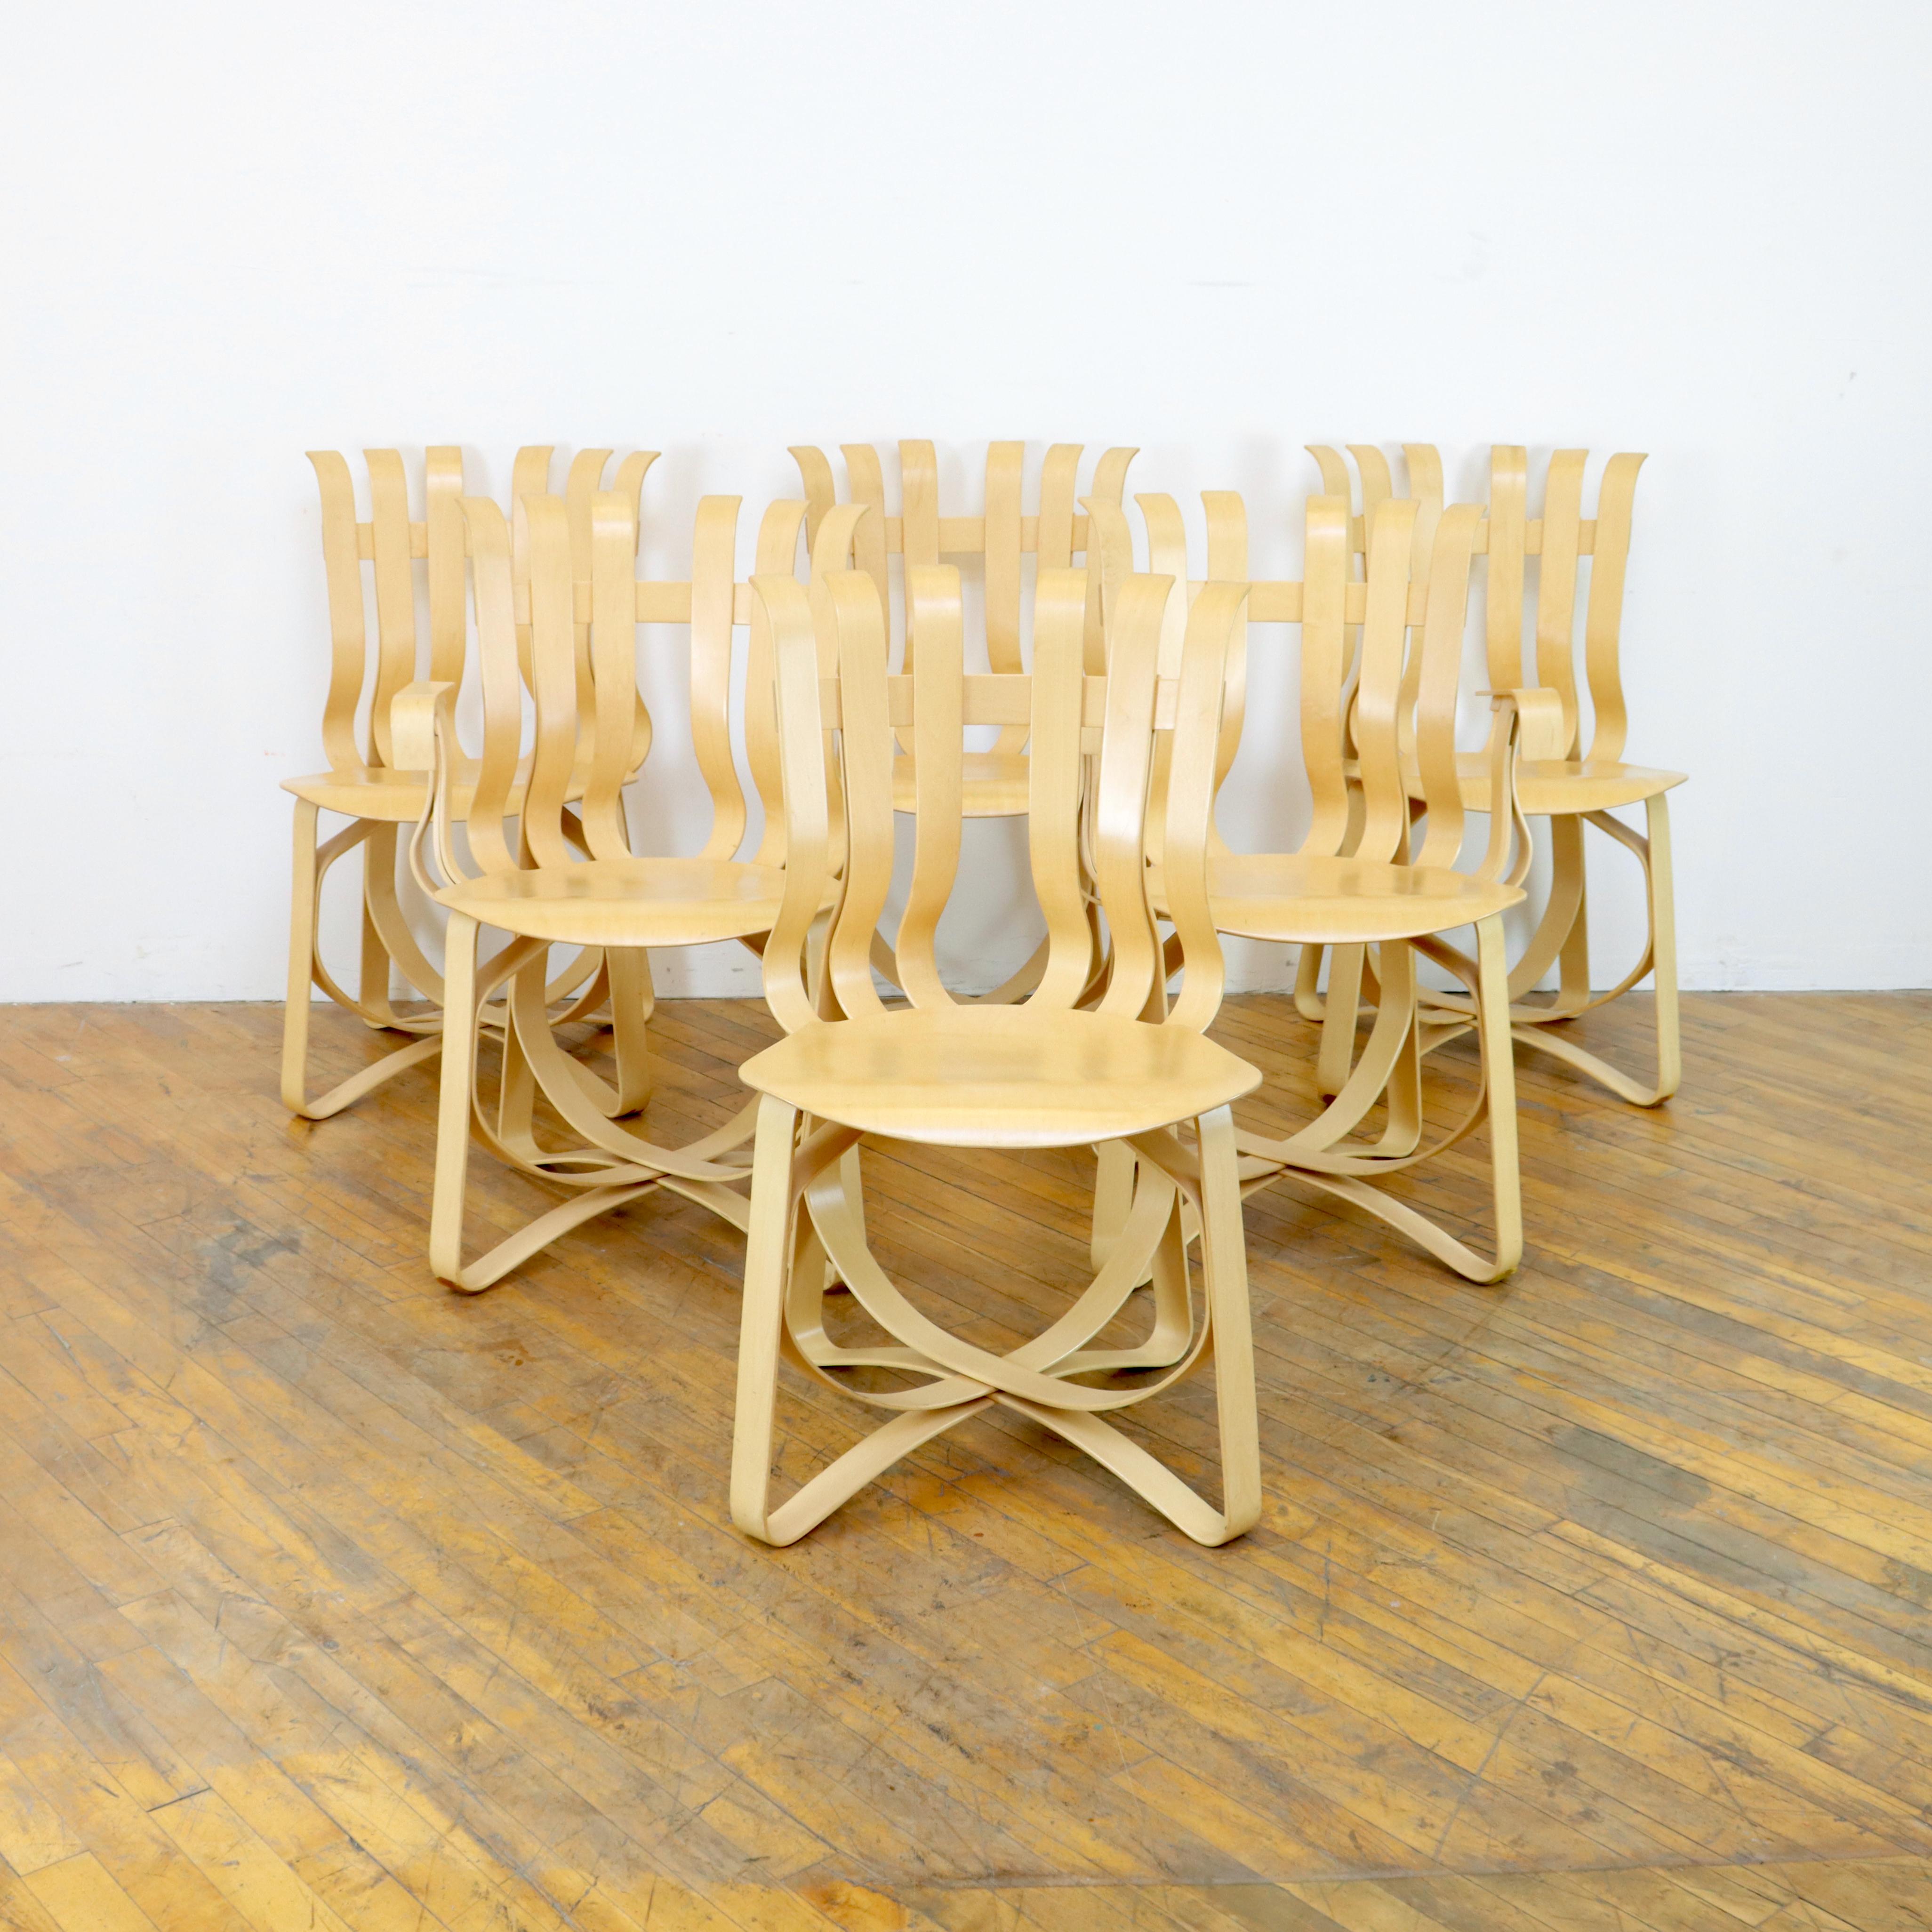 Wie seine ikonische Architektur gehören auch die von Frank Gehry für Knoll entworfenen Stühle zu den bekanntesten dieser Zeit.  Der Hat Trick Stuhl aus gebogenem Sperrholz ist skulptural und gleichzeitig verspielt.  Hier ist eine Beschreibung von